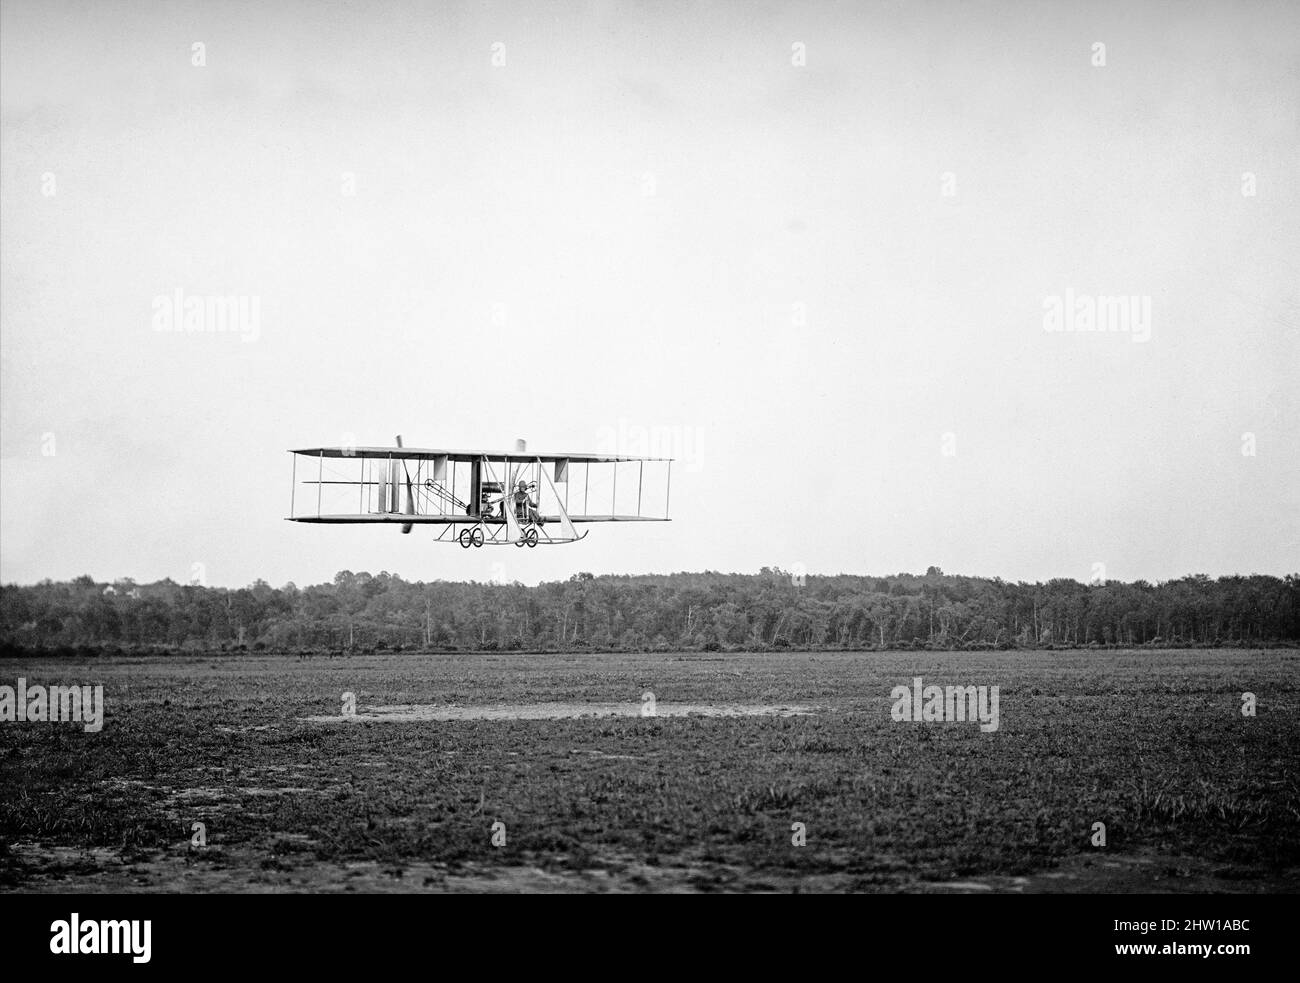 Une photographie du début du 20th siècle d'un biplane de Wright de type B, prise par le Lt Harry Graham au College Park Aviation Field dans le Maryland, aux États-Unis d'Amérique. The Wright machine a inventé et développé par les frères Wright, Orville et Wilbur, pionniers de l'aviation américaine, qui sont généralement crédités avec des commandes d'avions qui ont rendu possible le vol à voilure fixe permettant le premier vol contrôlé et soutenu d'un avion motorisé plus lourd que l'air avec le Wright Flyer le 17 décembre 1903. Banque D'Images